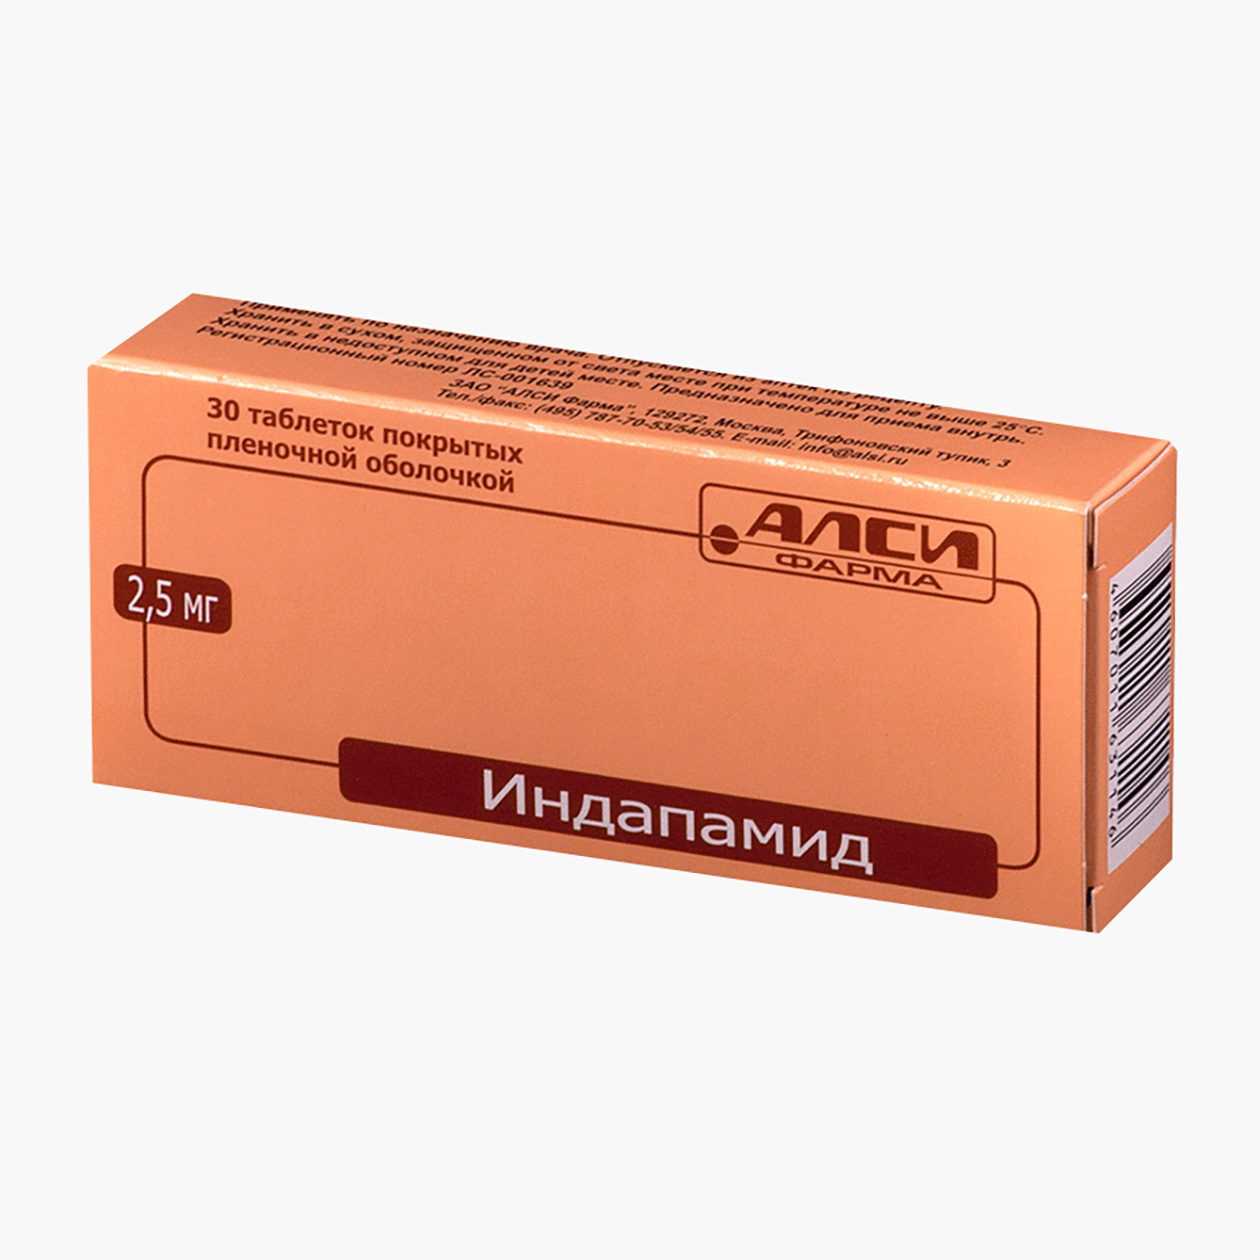 «Индапамид», 2,5 мг. Аналог по действующему веществу стоит в пять раз дешевле